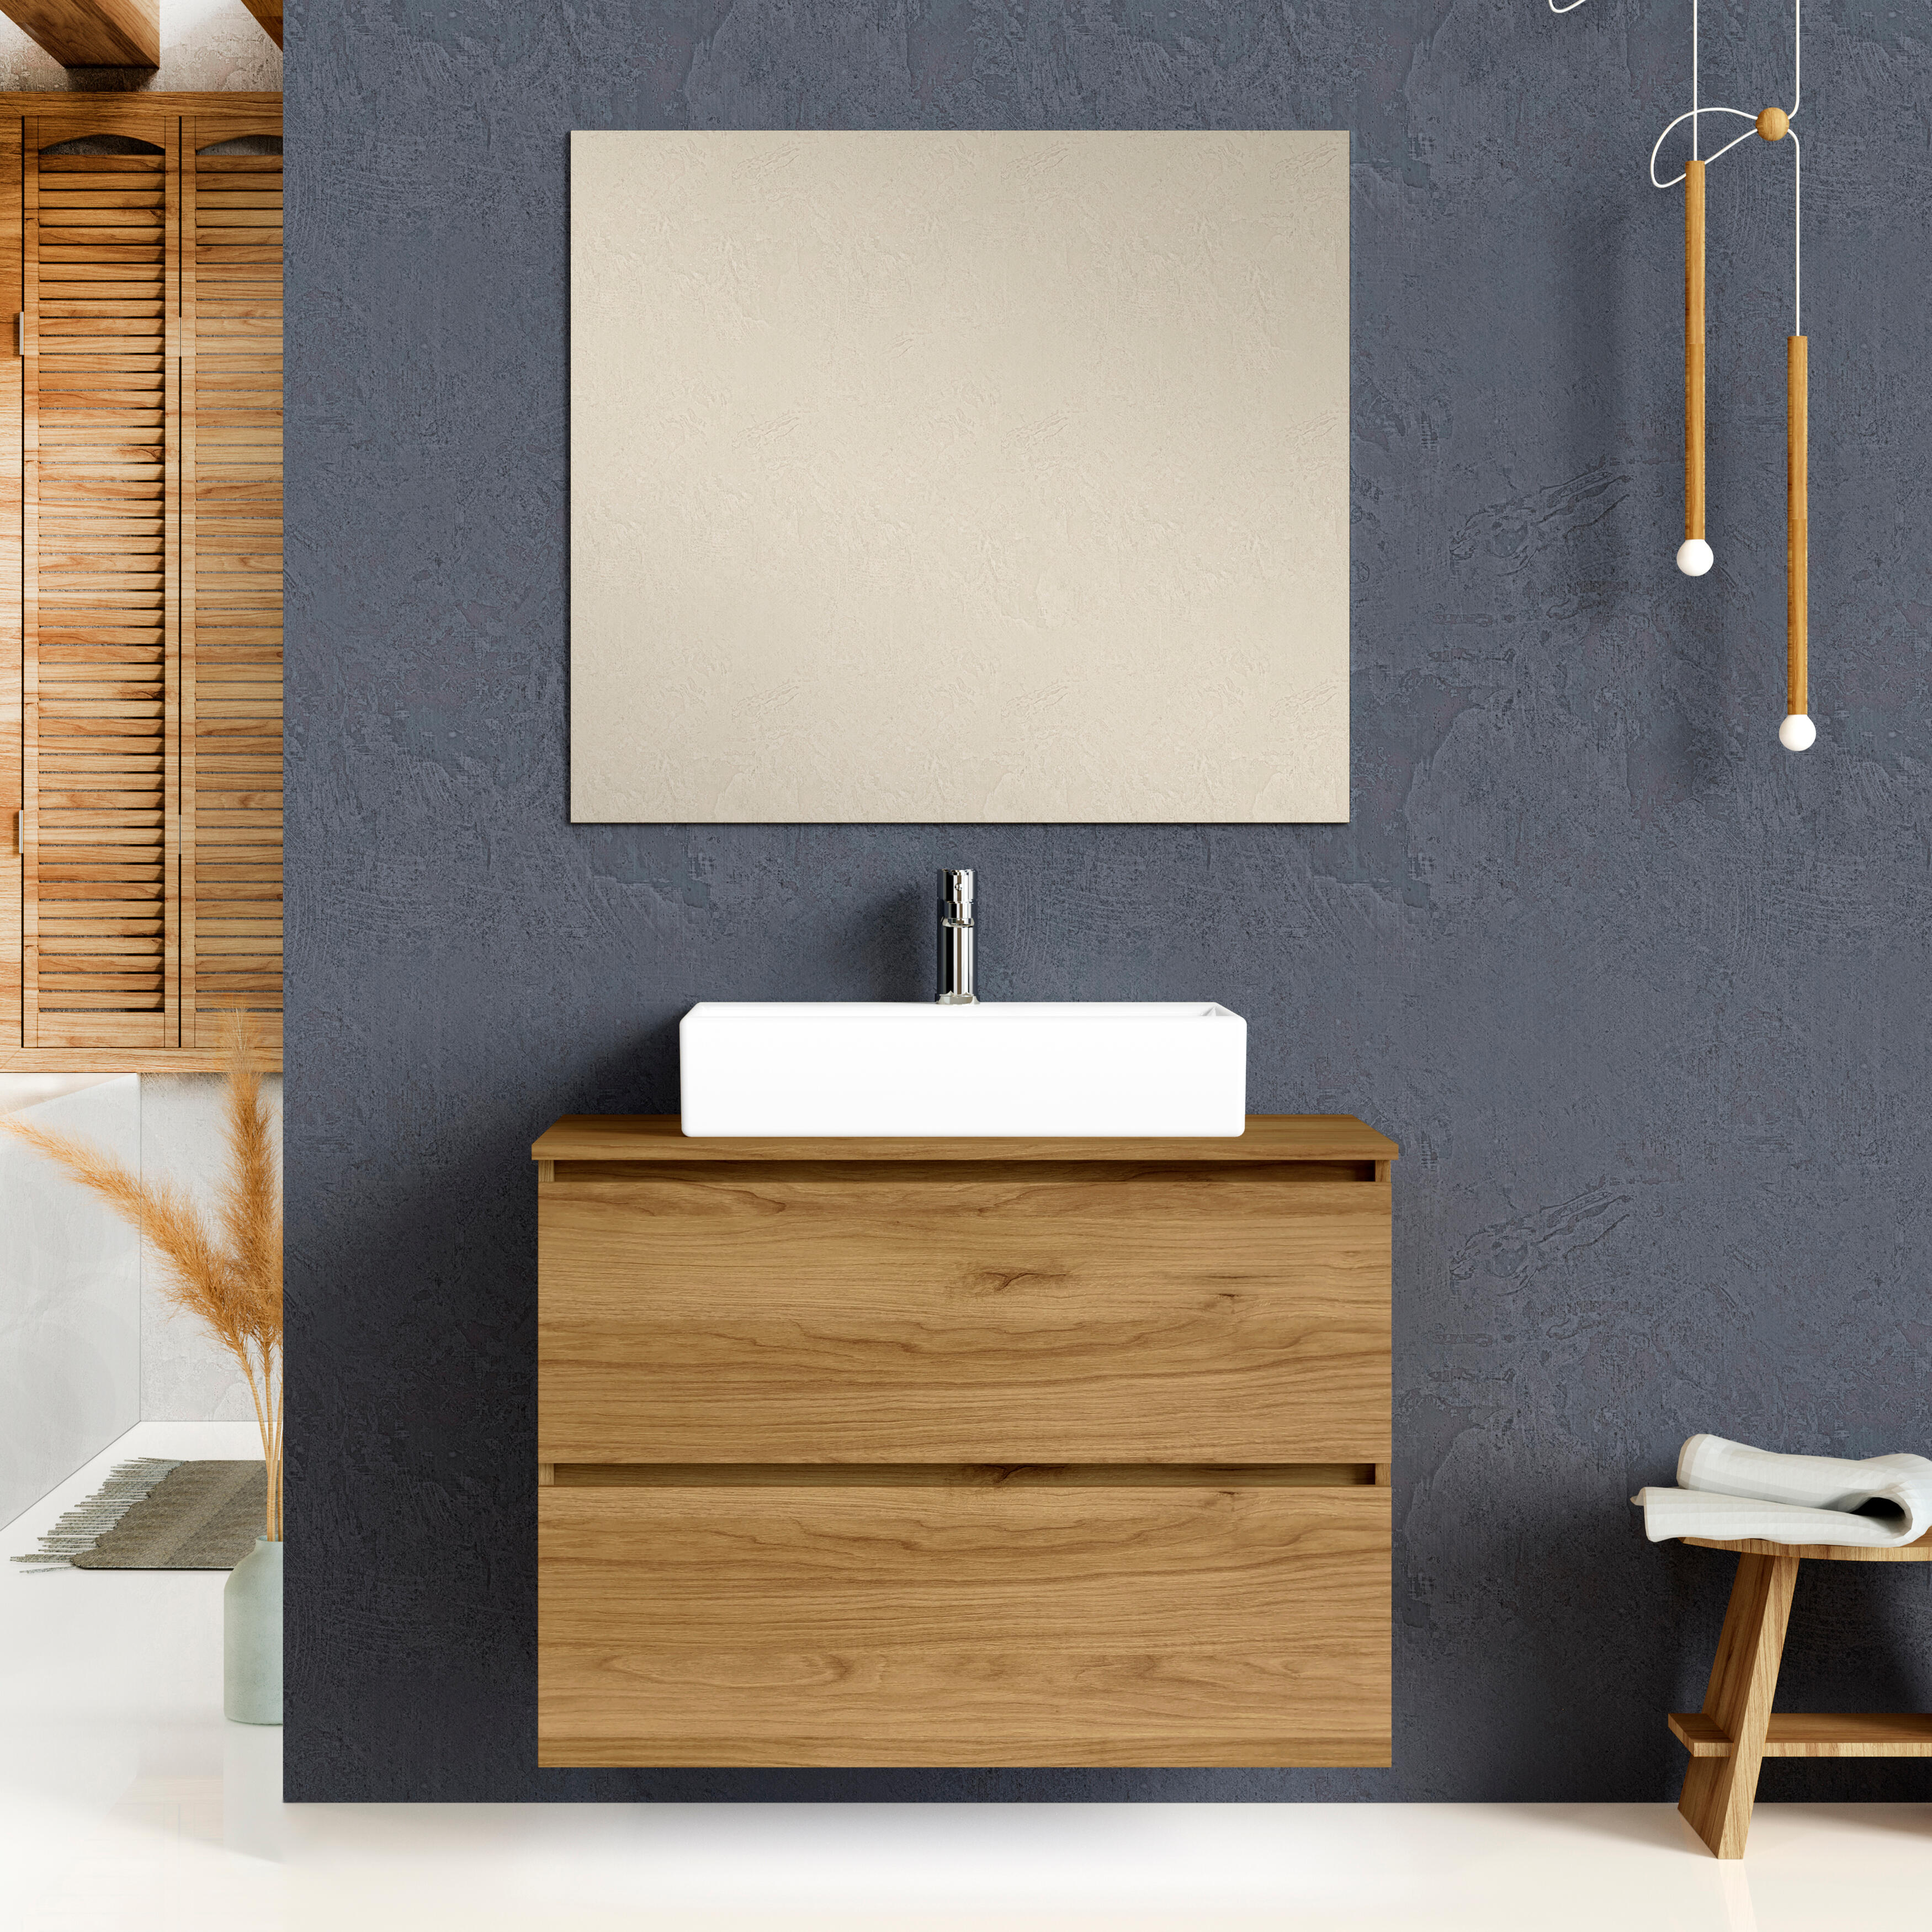 Mueble de baño con lavabo ocean marrón 90x46 cm